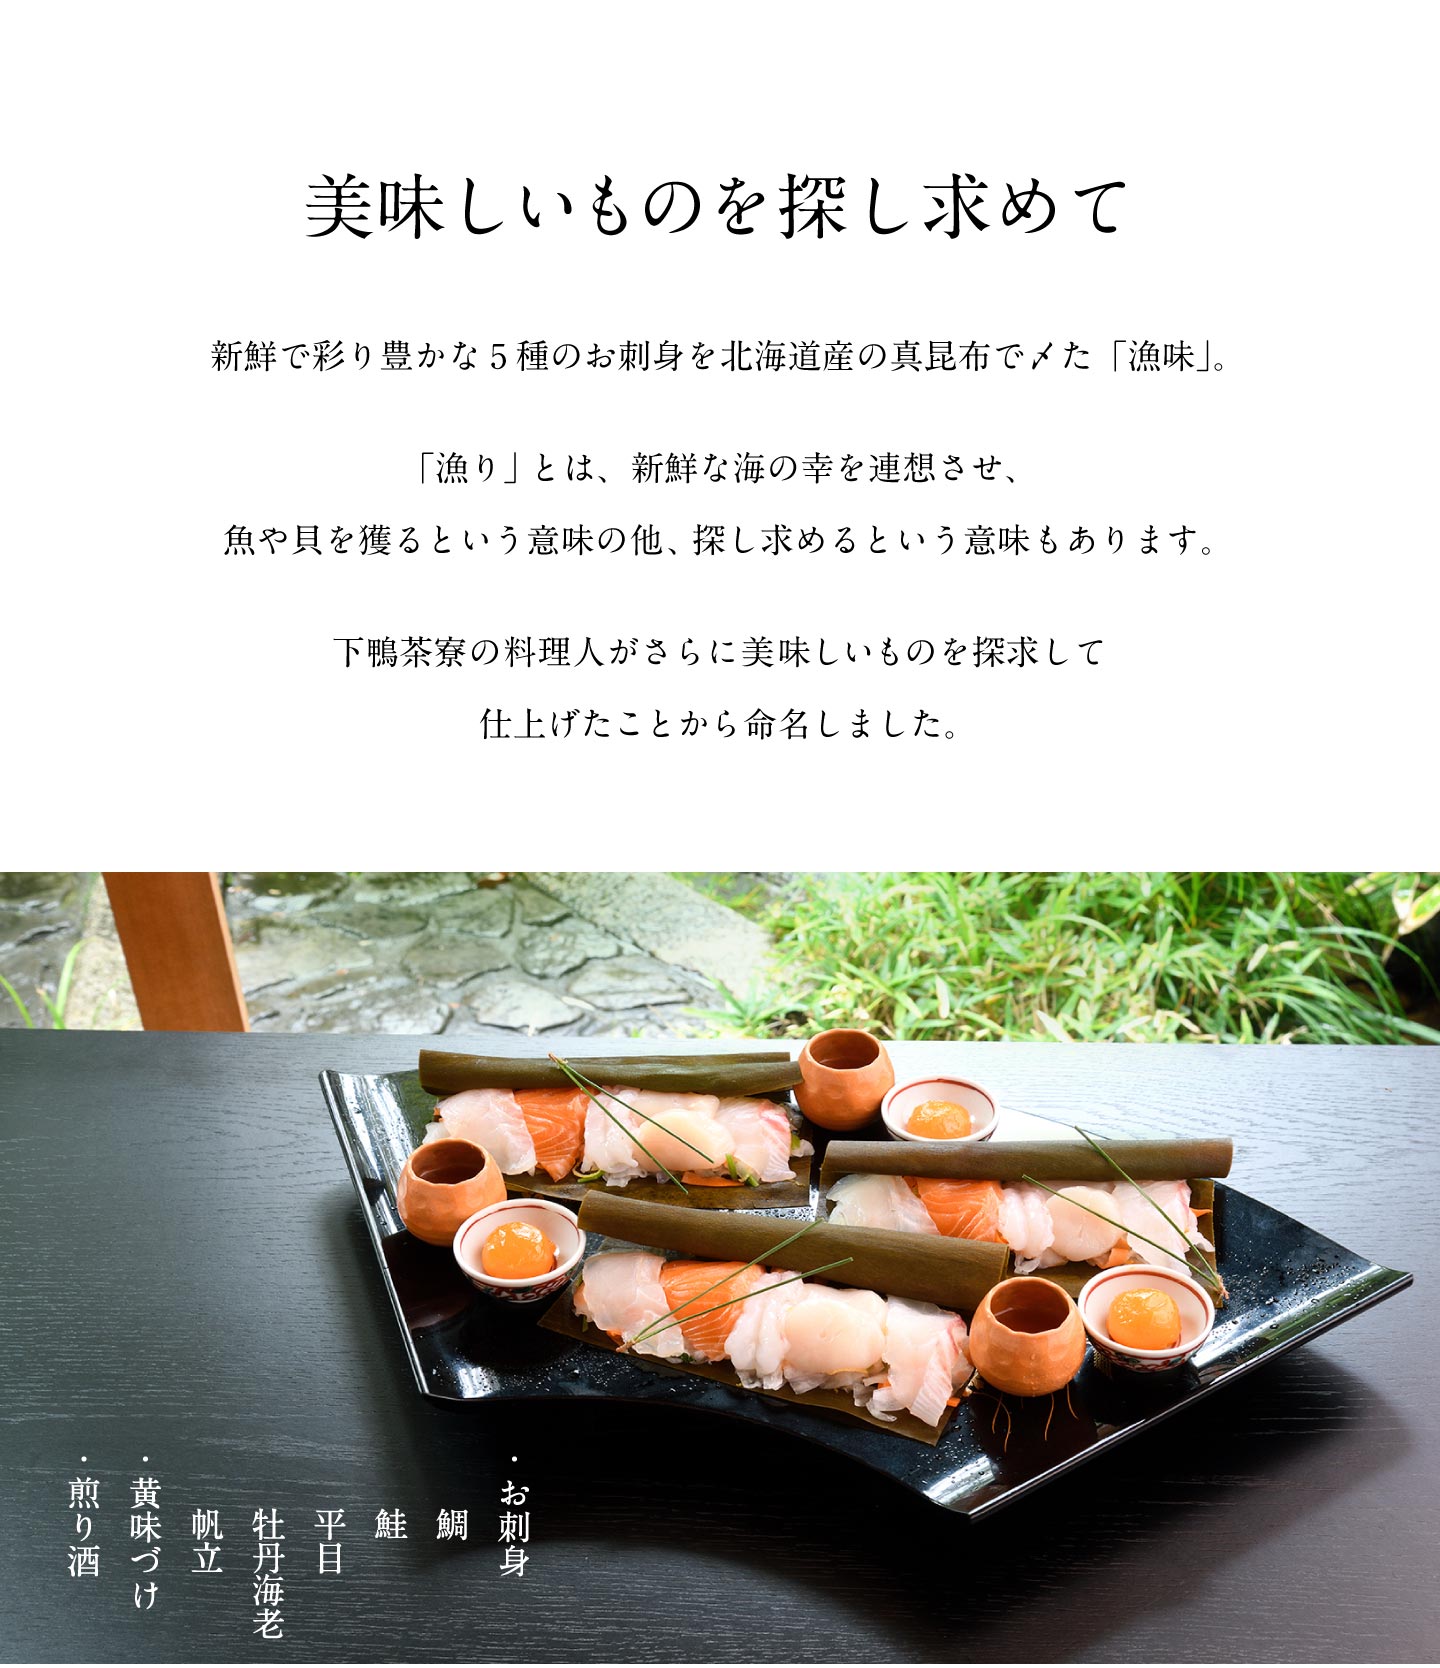 彩り豊かな5種のお刺身を北海道産の真昆布で〆て。